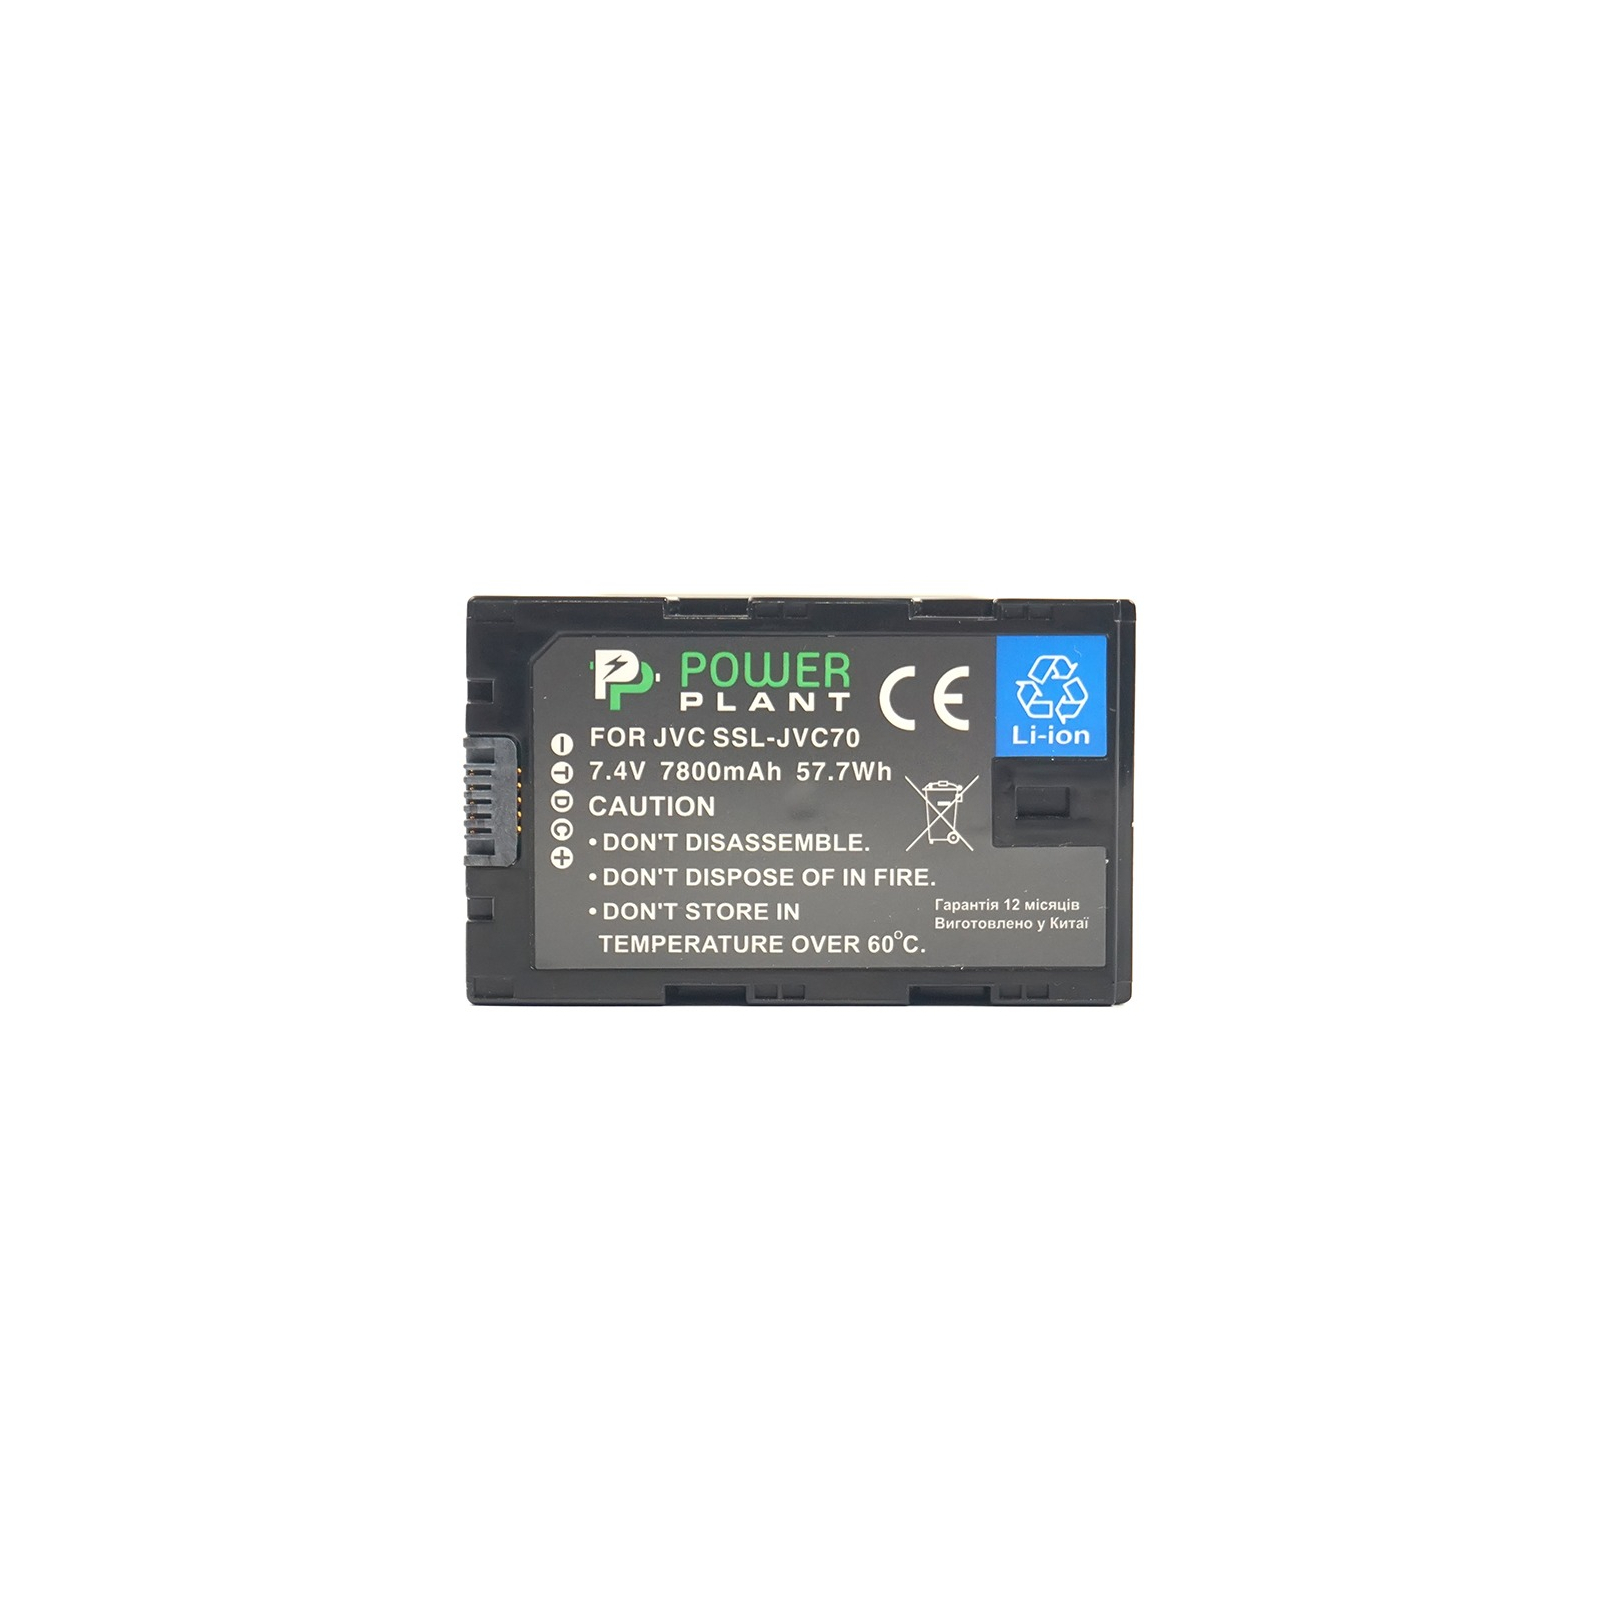 Акумулятор до фото/відео PowerPlant JVC SSL-JVC70, 7800mAh (CB970063) зображення 2